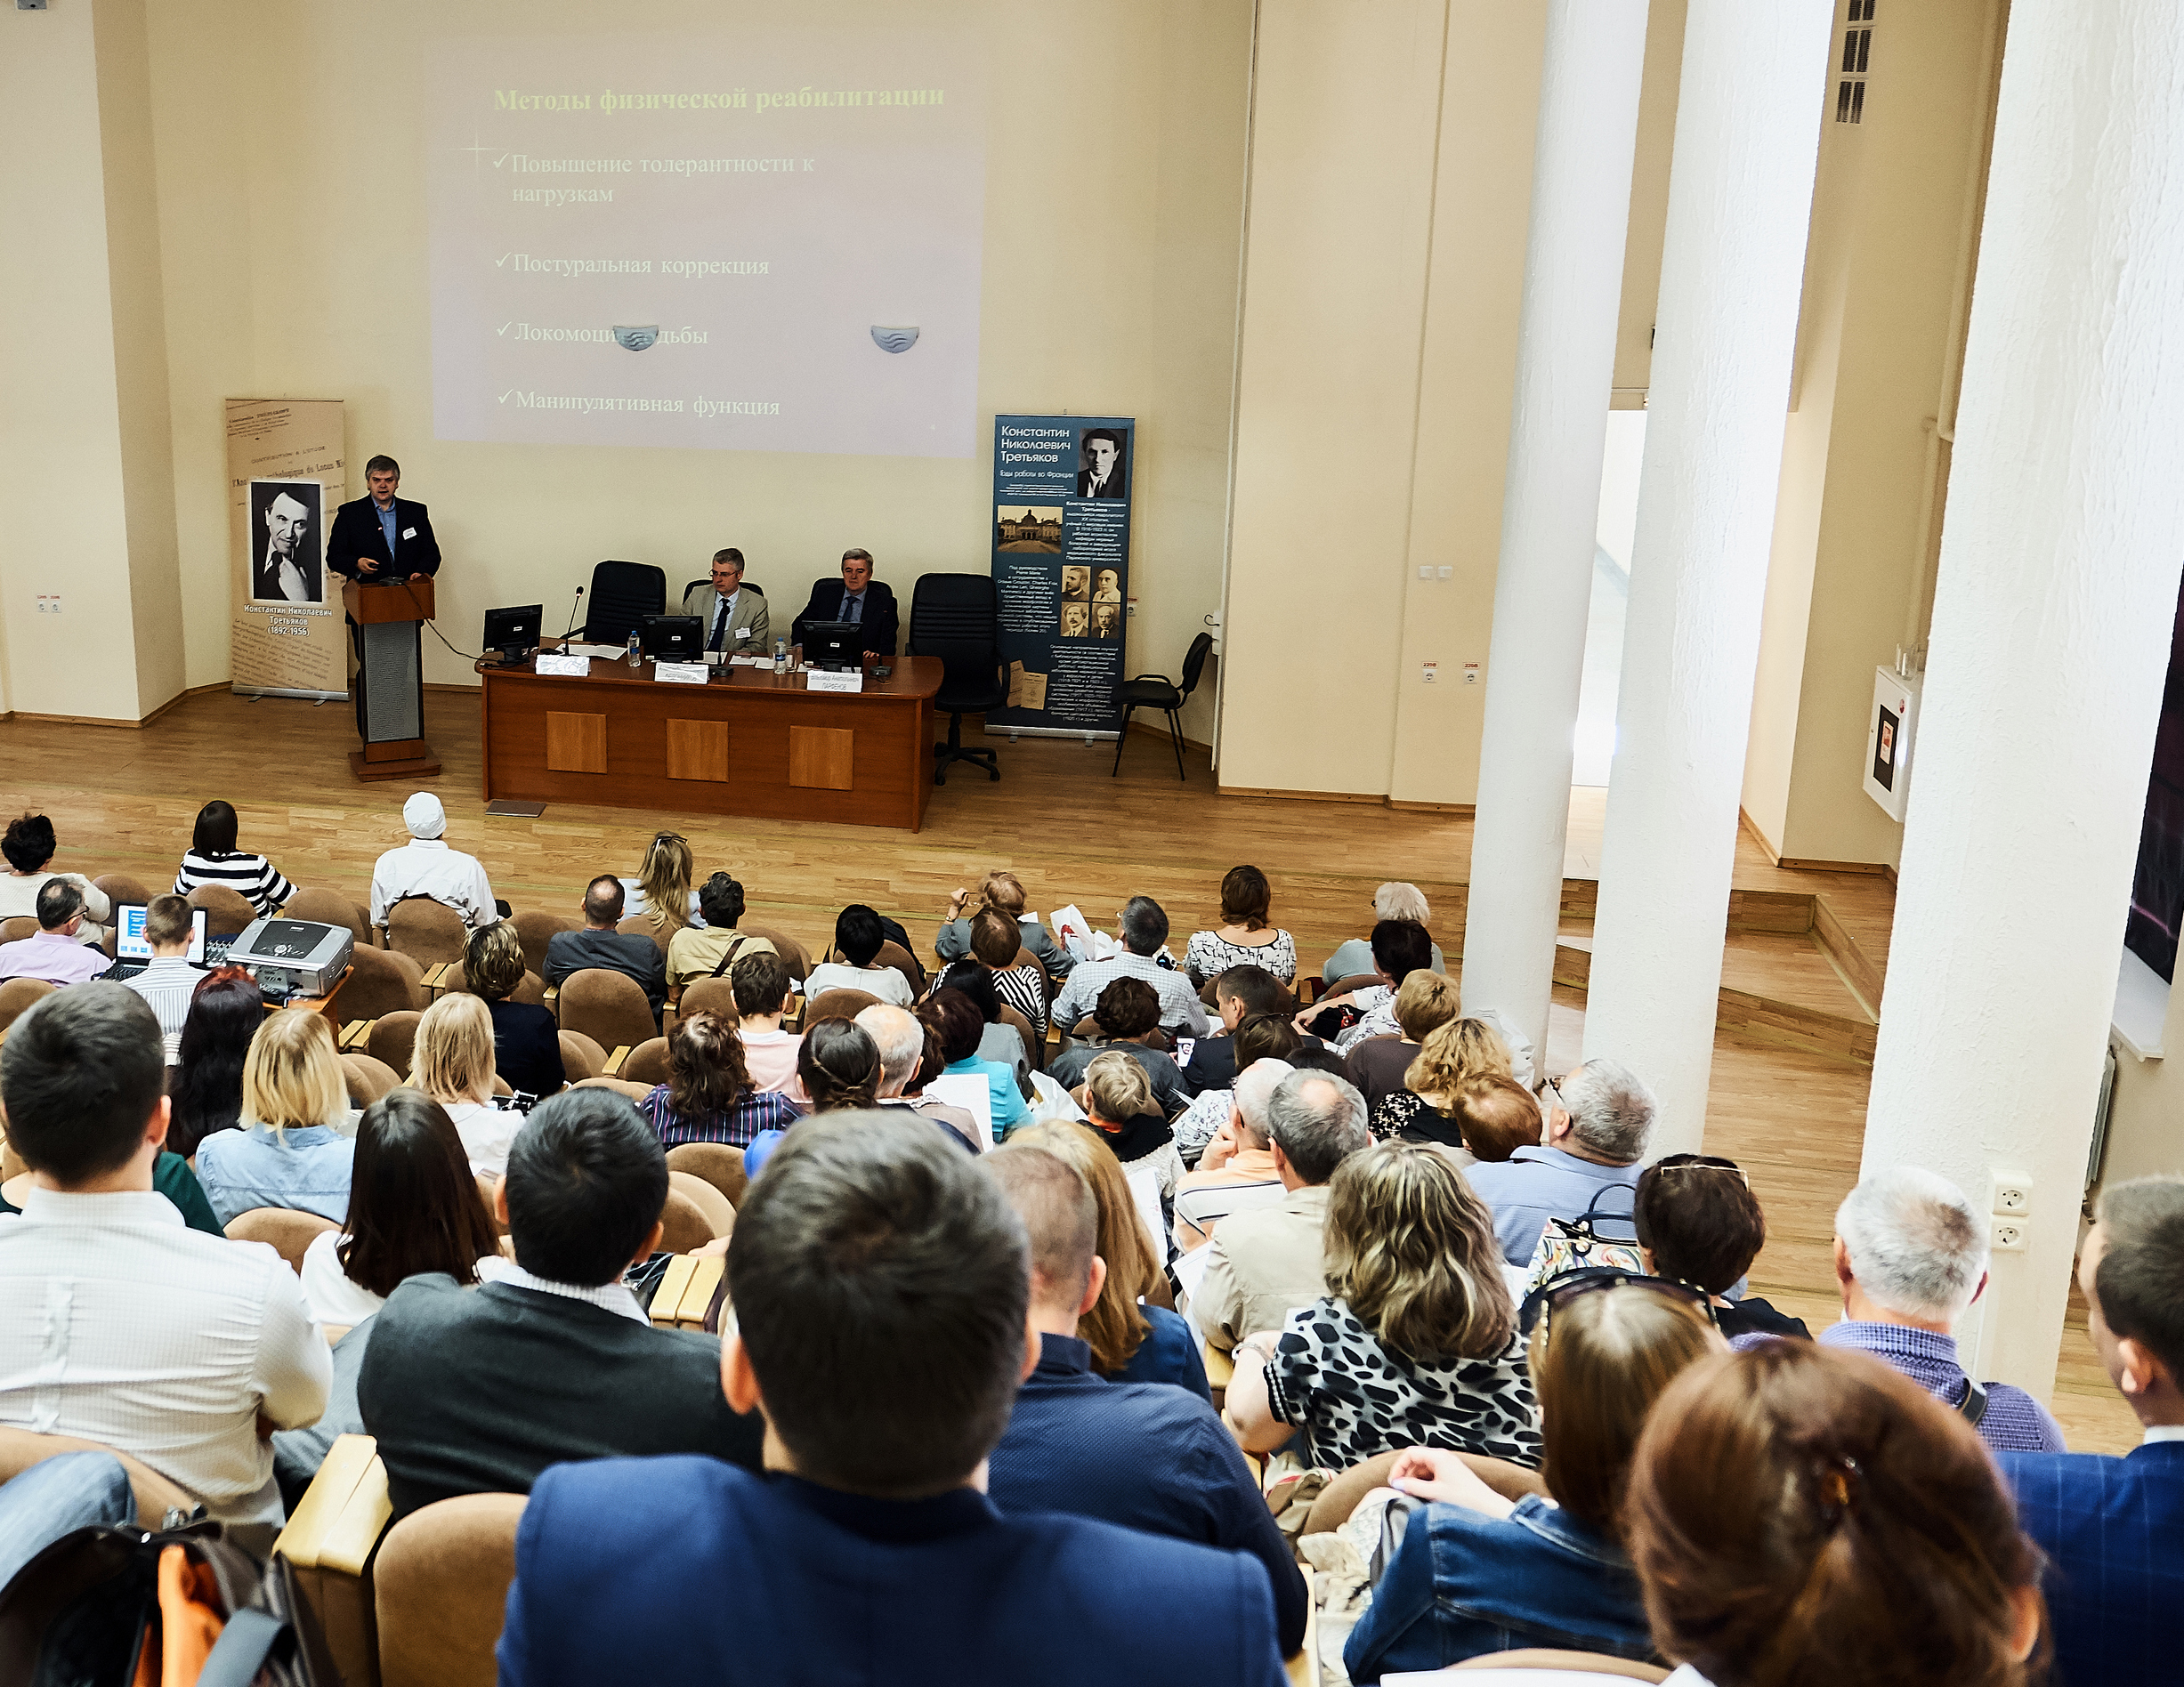 В Саратовском ГМУ состоялась крупная международная научно-практическая конференция, посвященная вопросам диагностики и лечения заболеваний нервной системы.